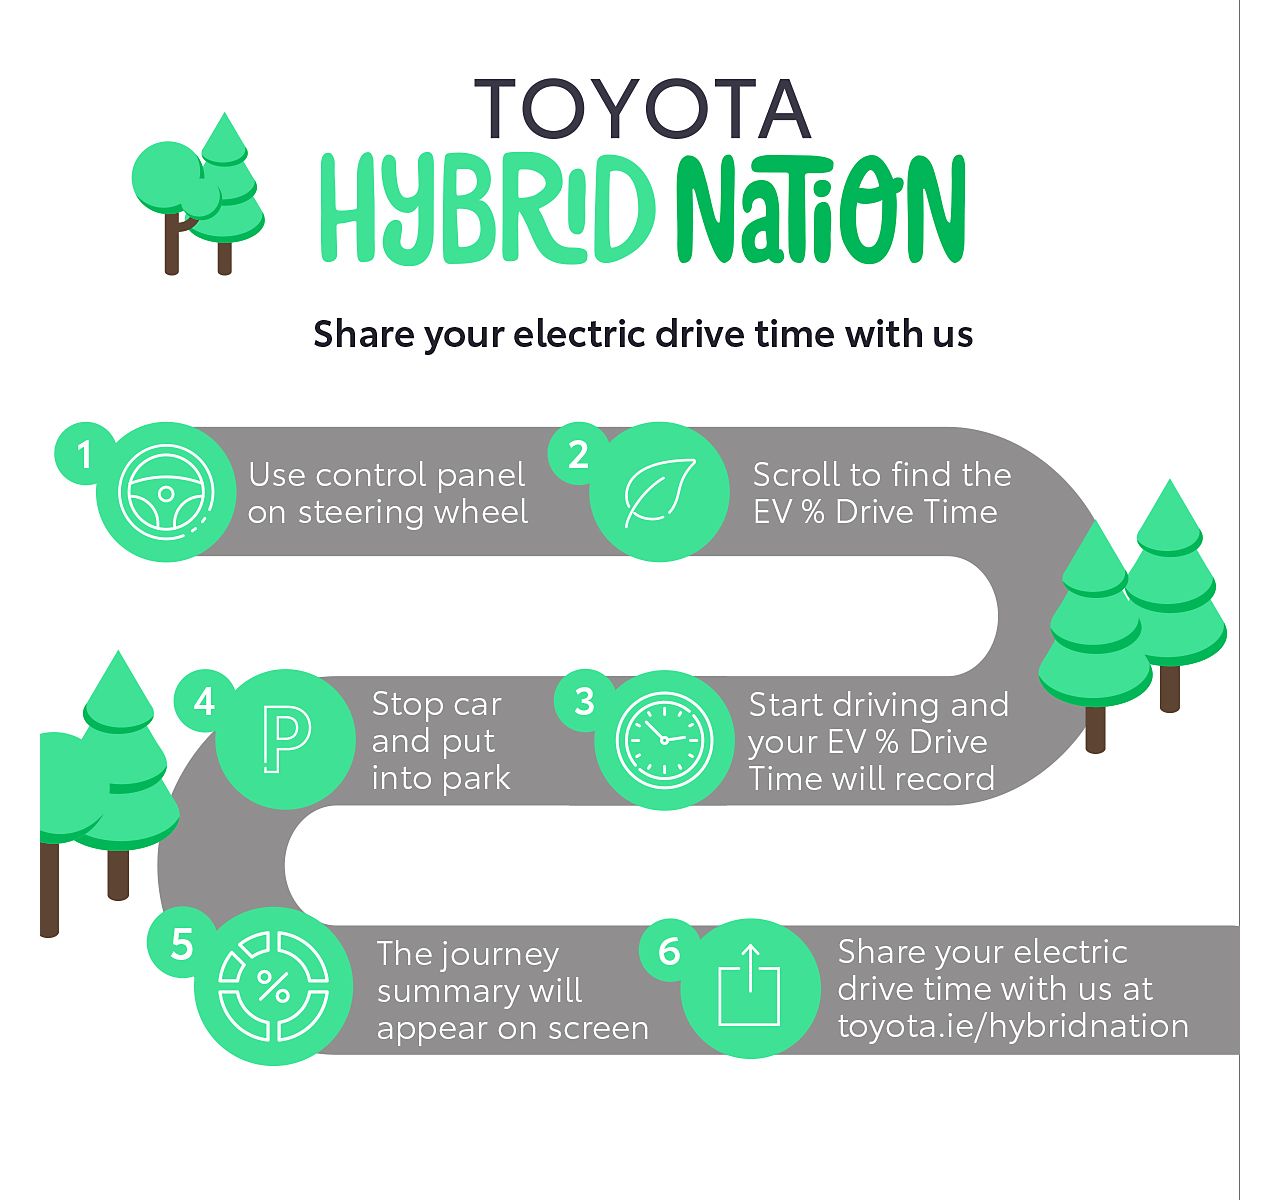 Hybrid Nation